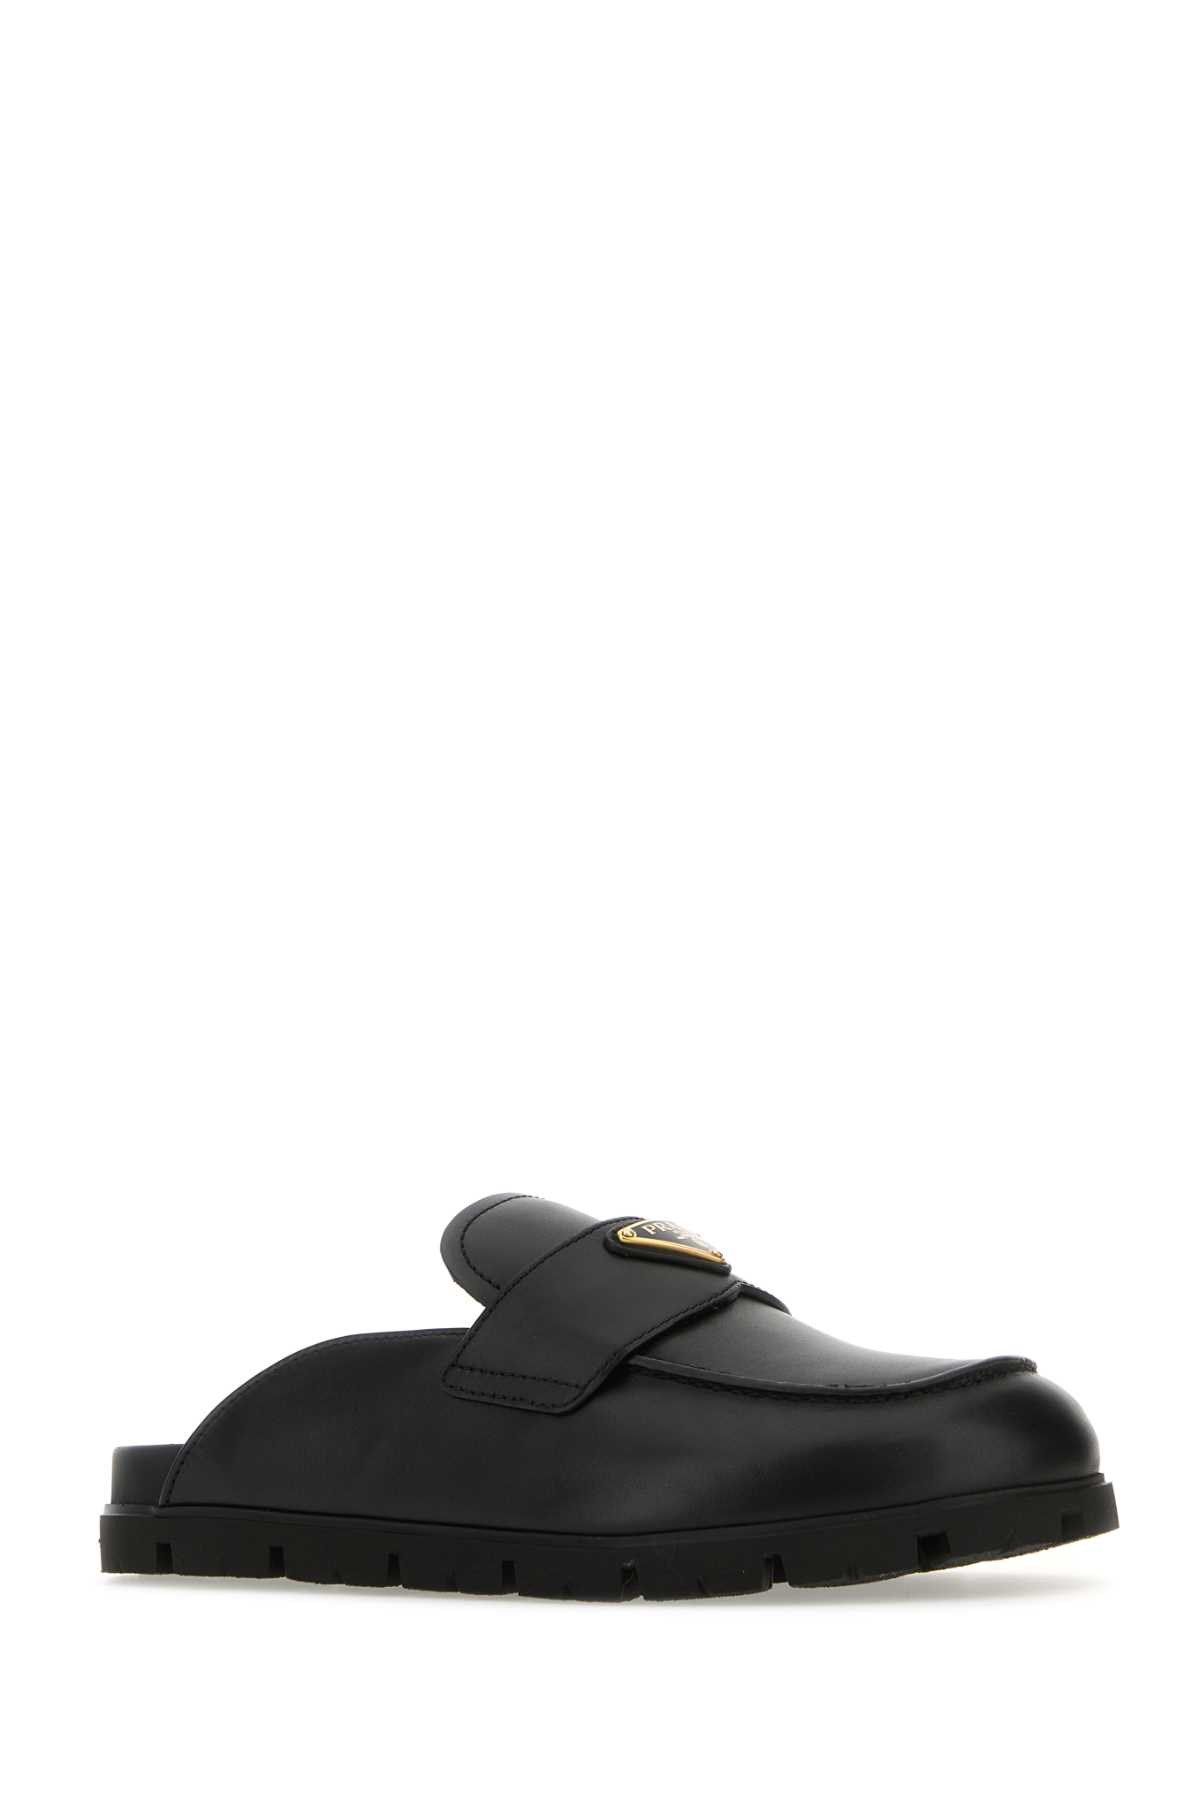 Prada Black Leather Slippers In Nero